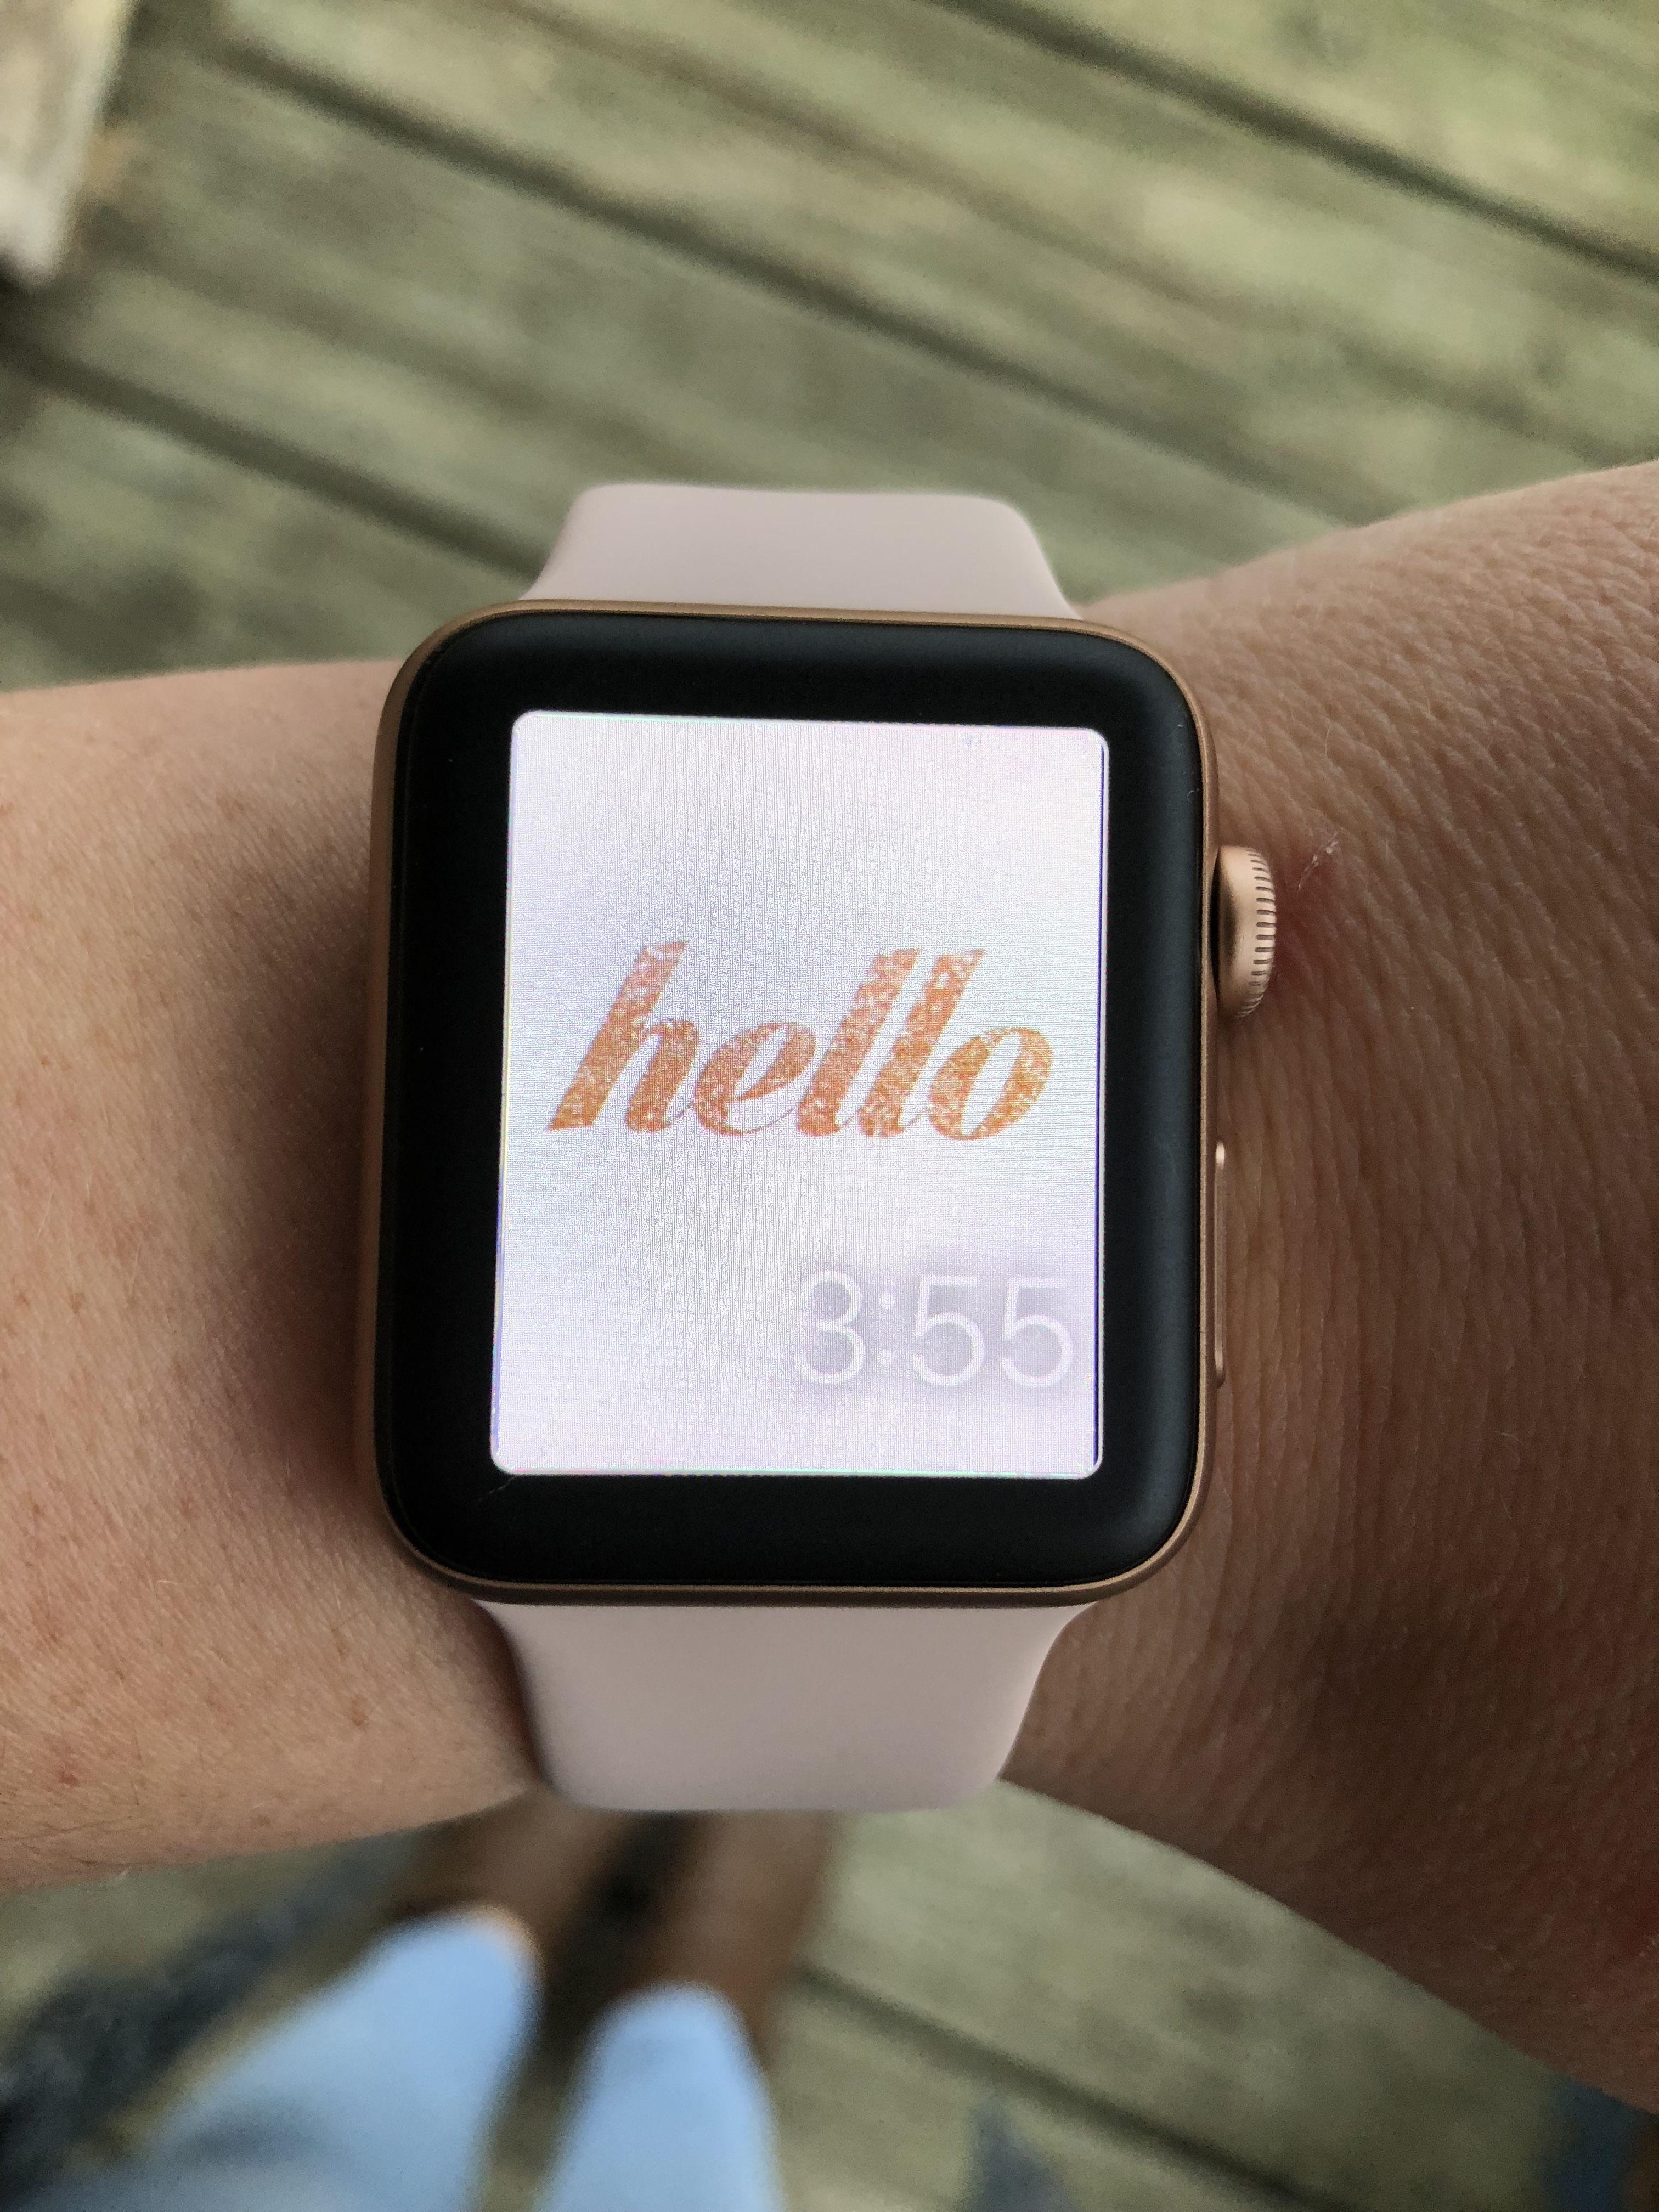 3024x4032 Hình nền dễ thương cho Apple Watch vàng hồng.  Apple Watch